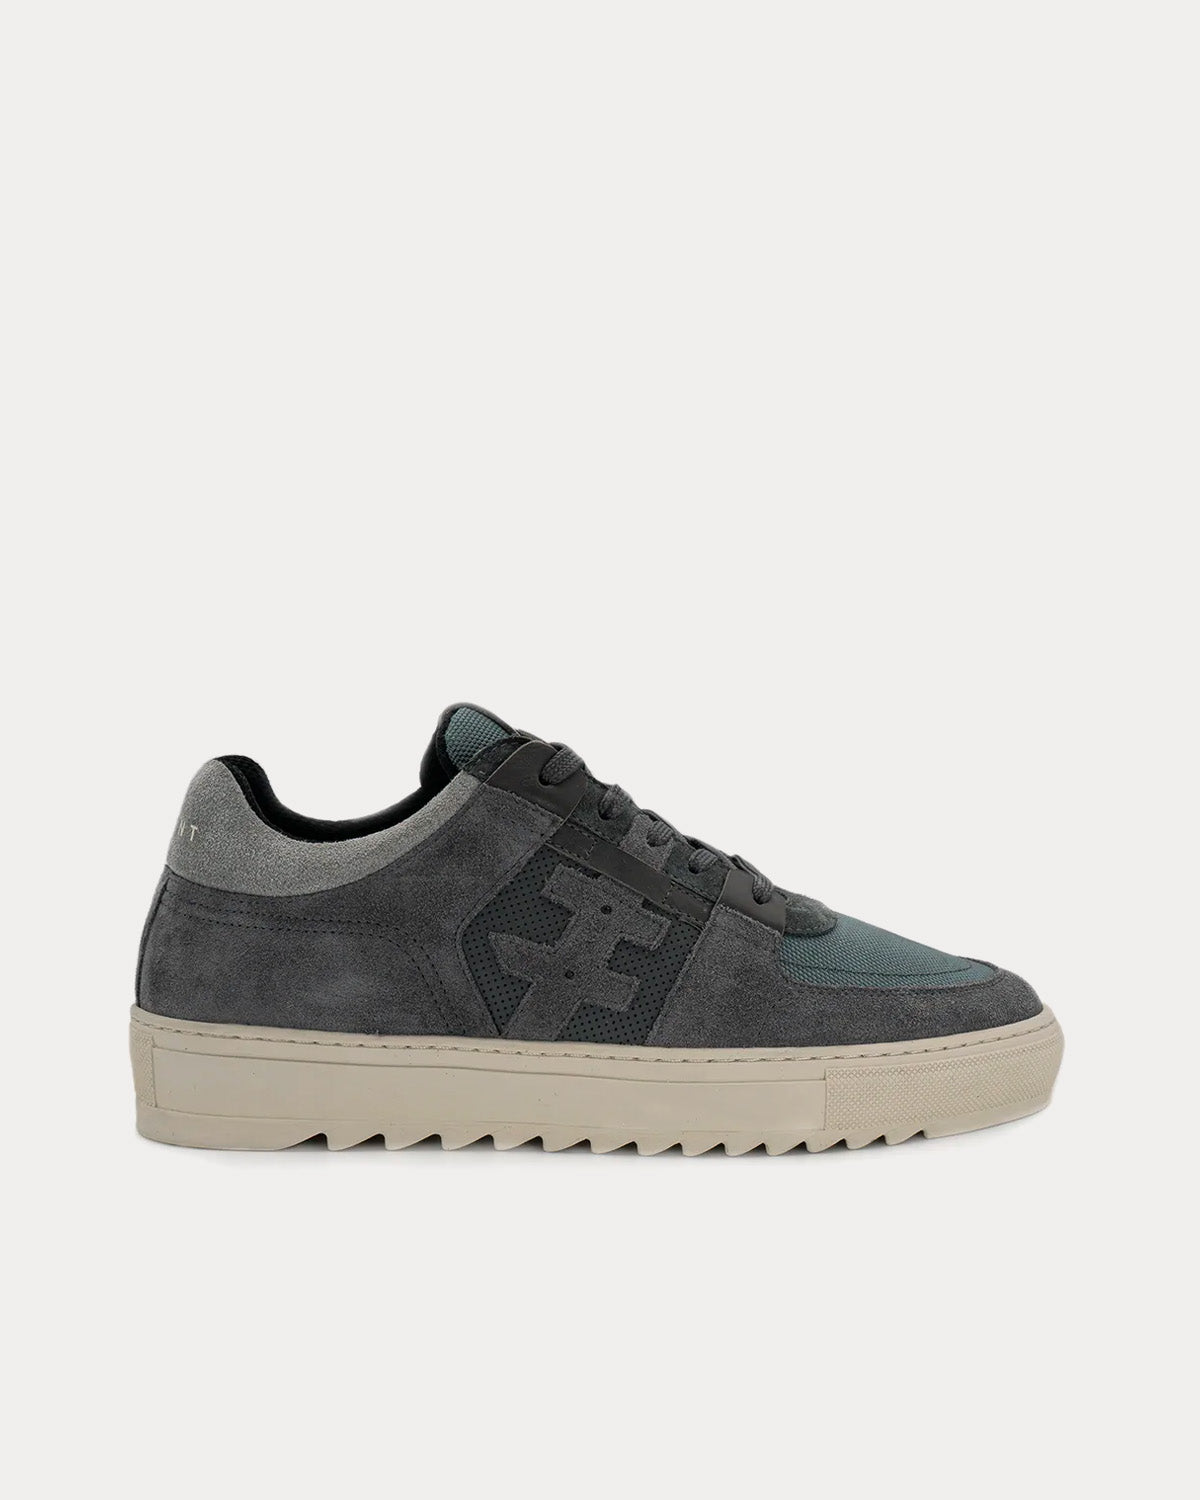 Hyphnt - City Walker Dark Ice Grey Low Top Sneakers